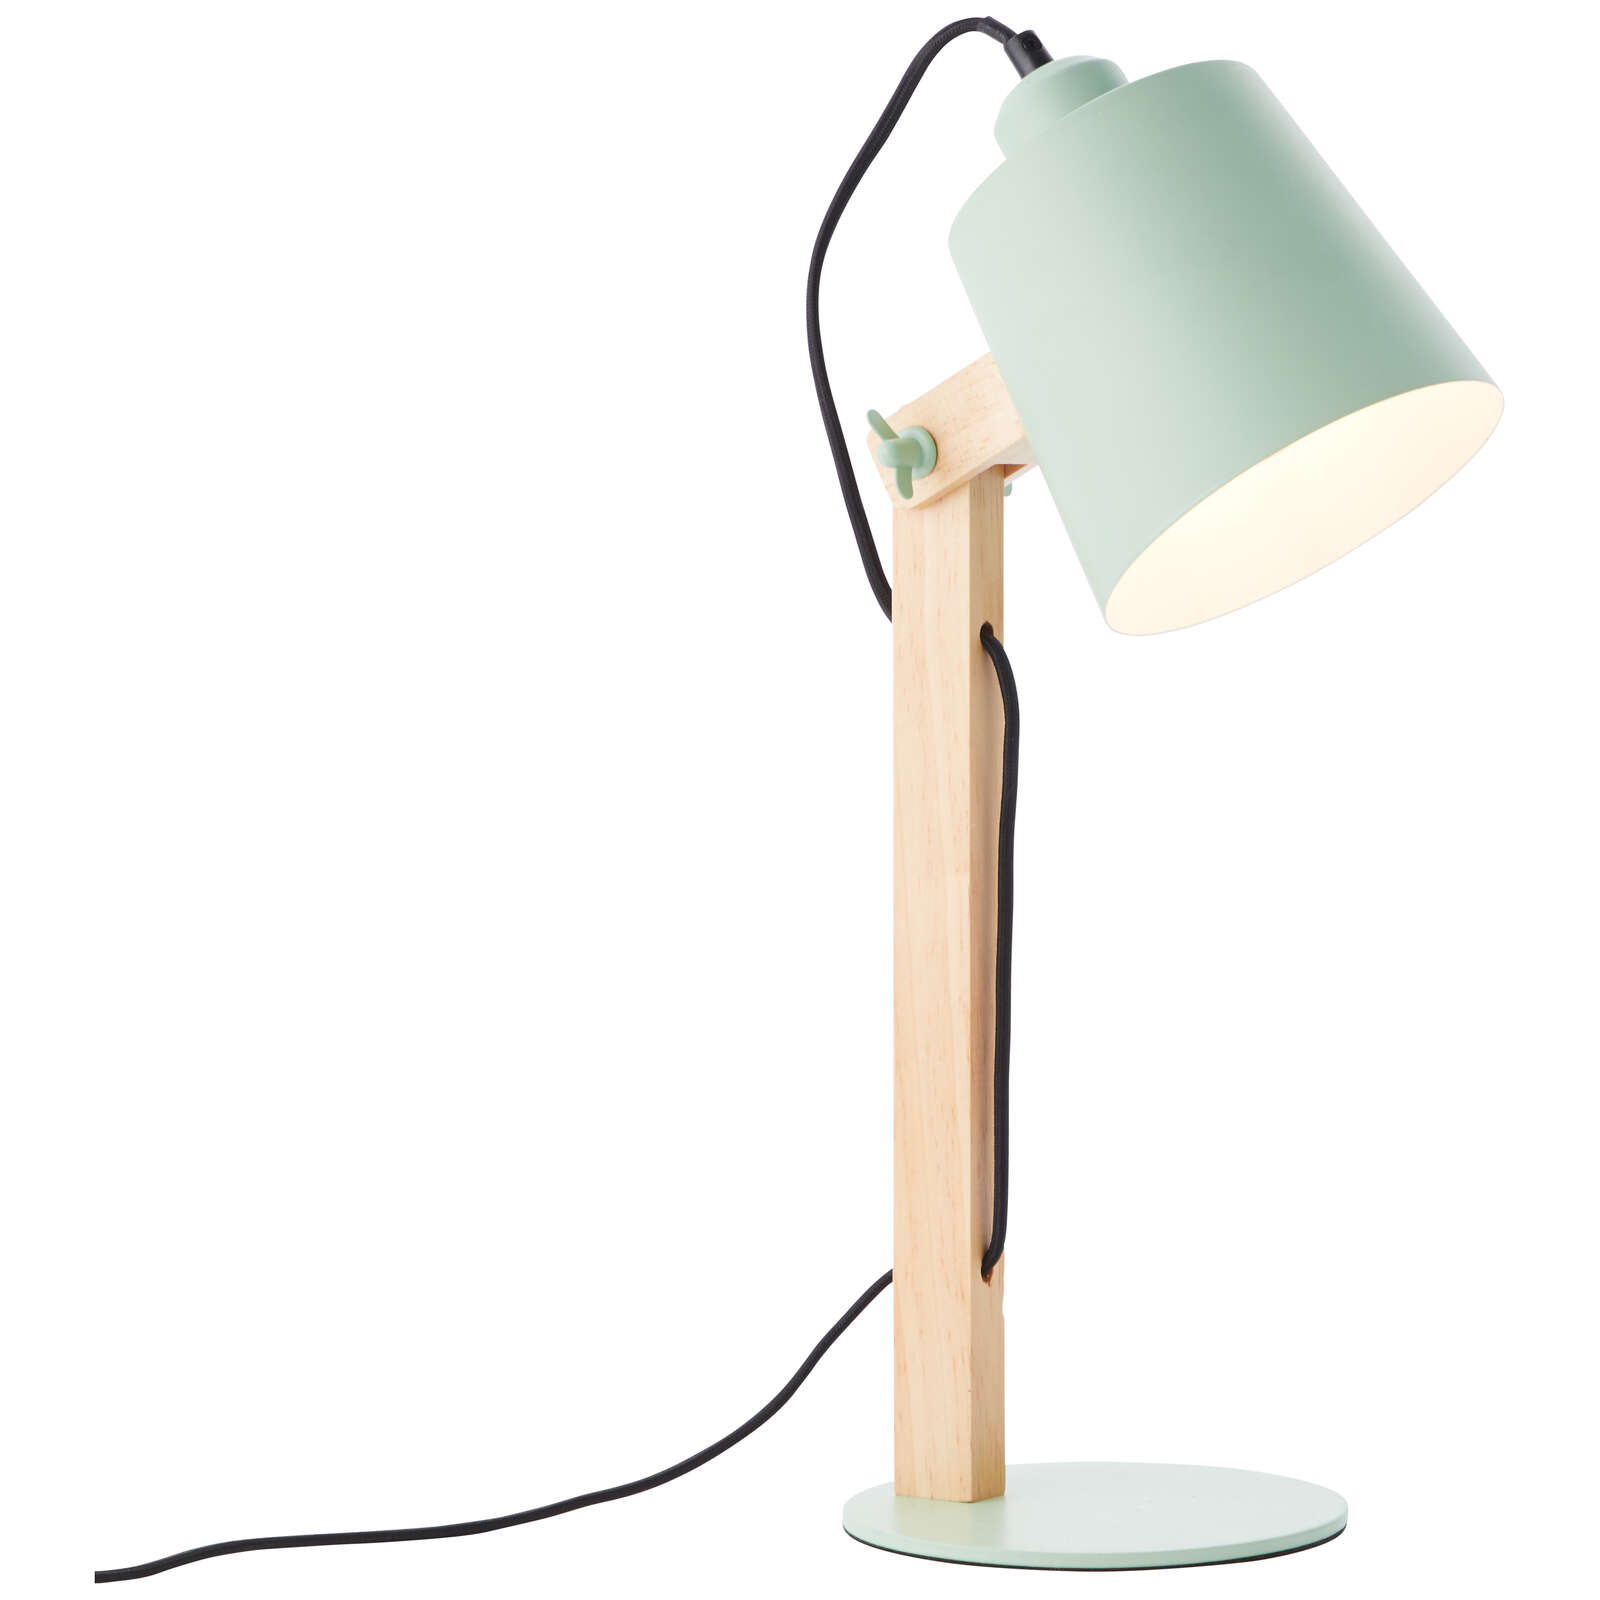             Lampe de table en bois - Paul 1 - Vert
        